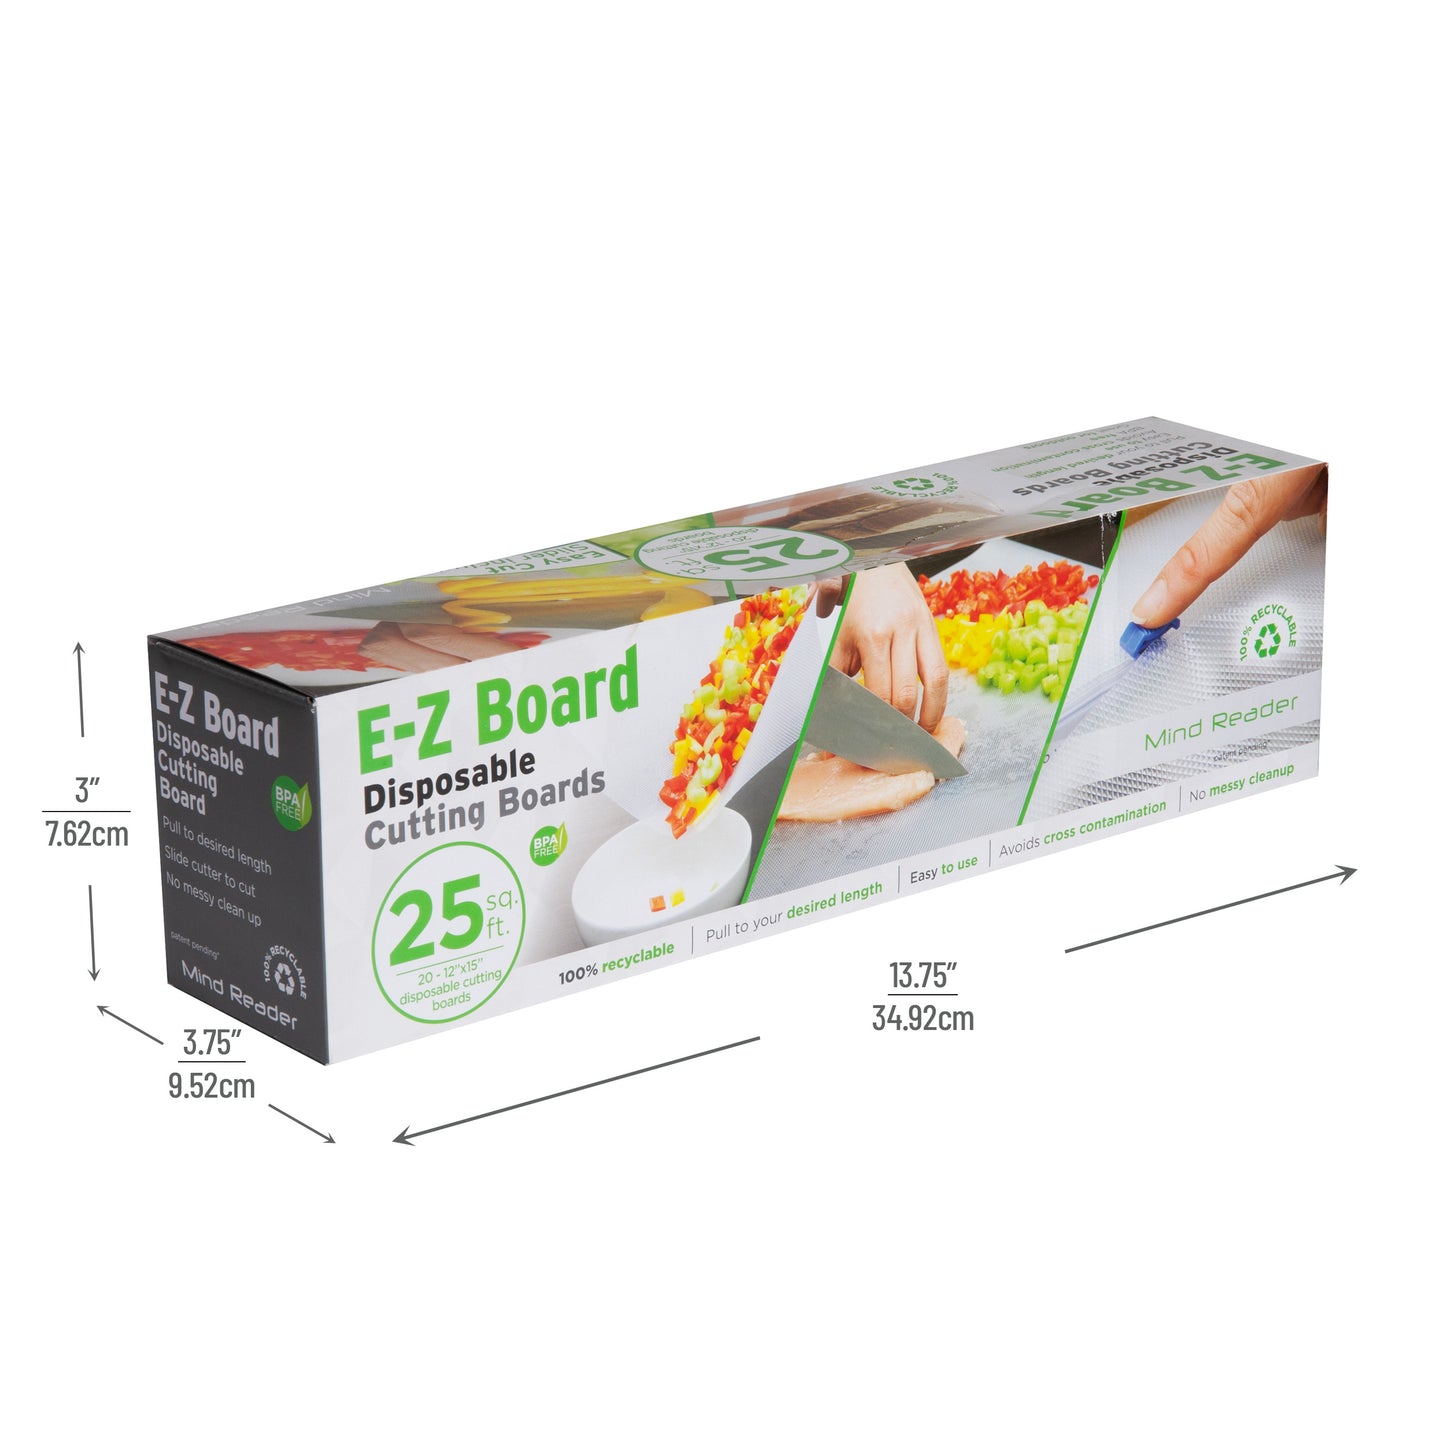 E-Z Board Disposable Cutting Boards, 25 Square Feet 